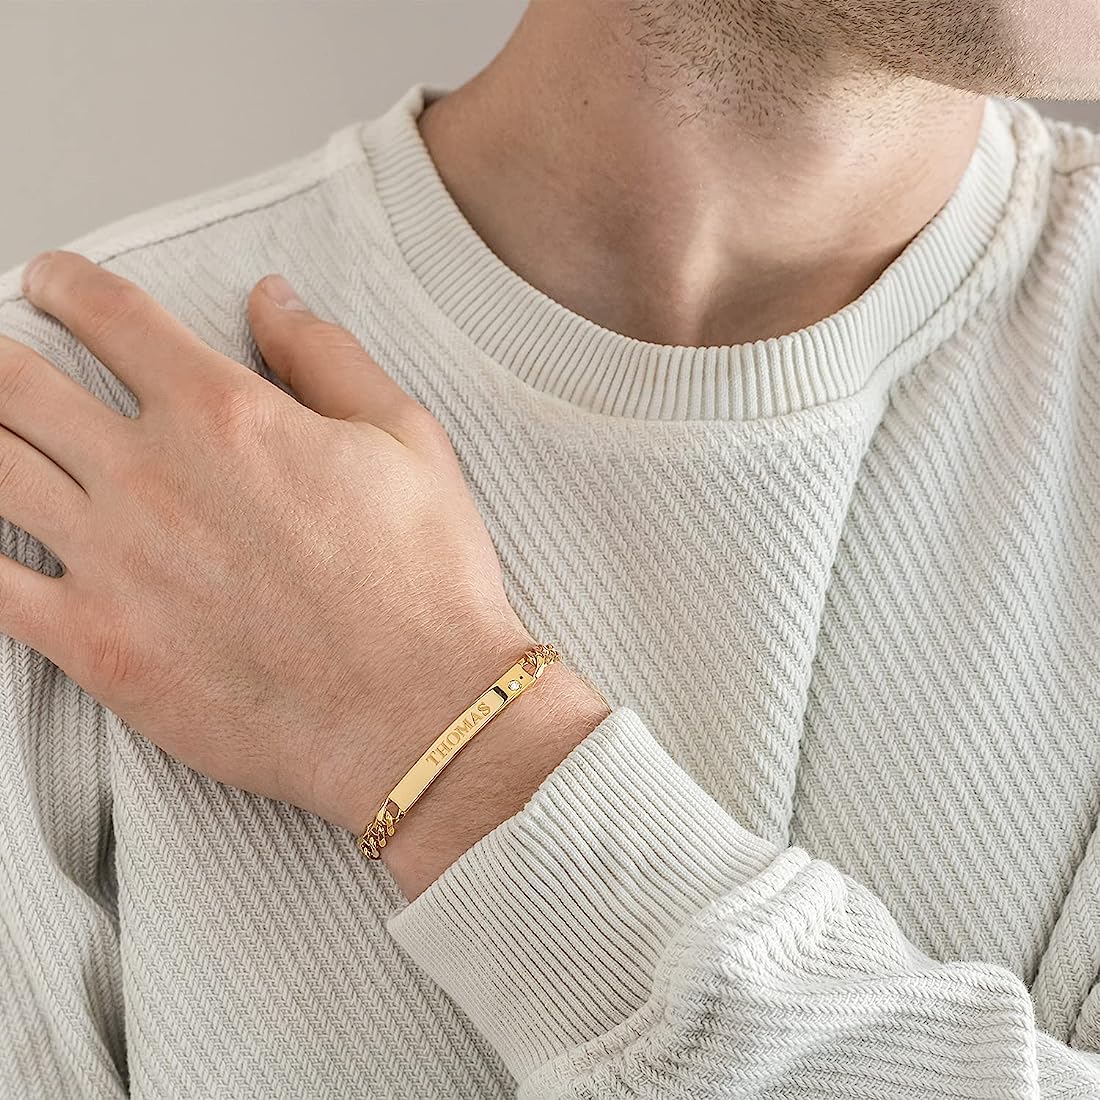 Handsome men’s bracelet designs to Channelise Your Inner Trendsetter!